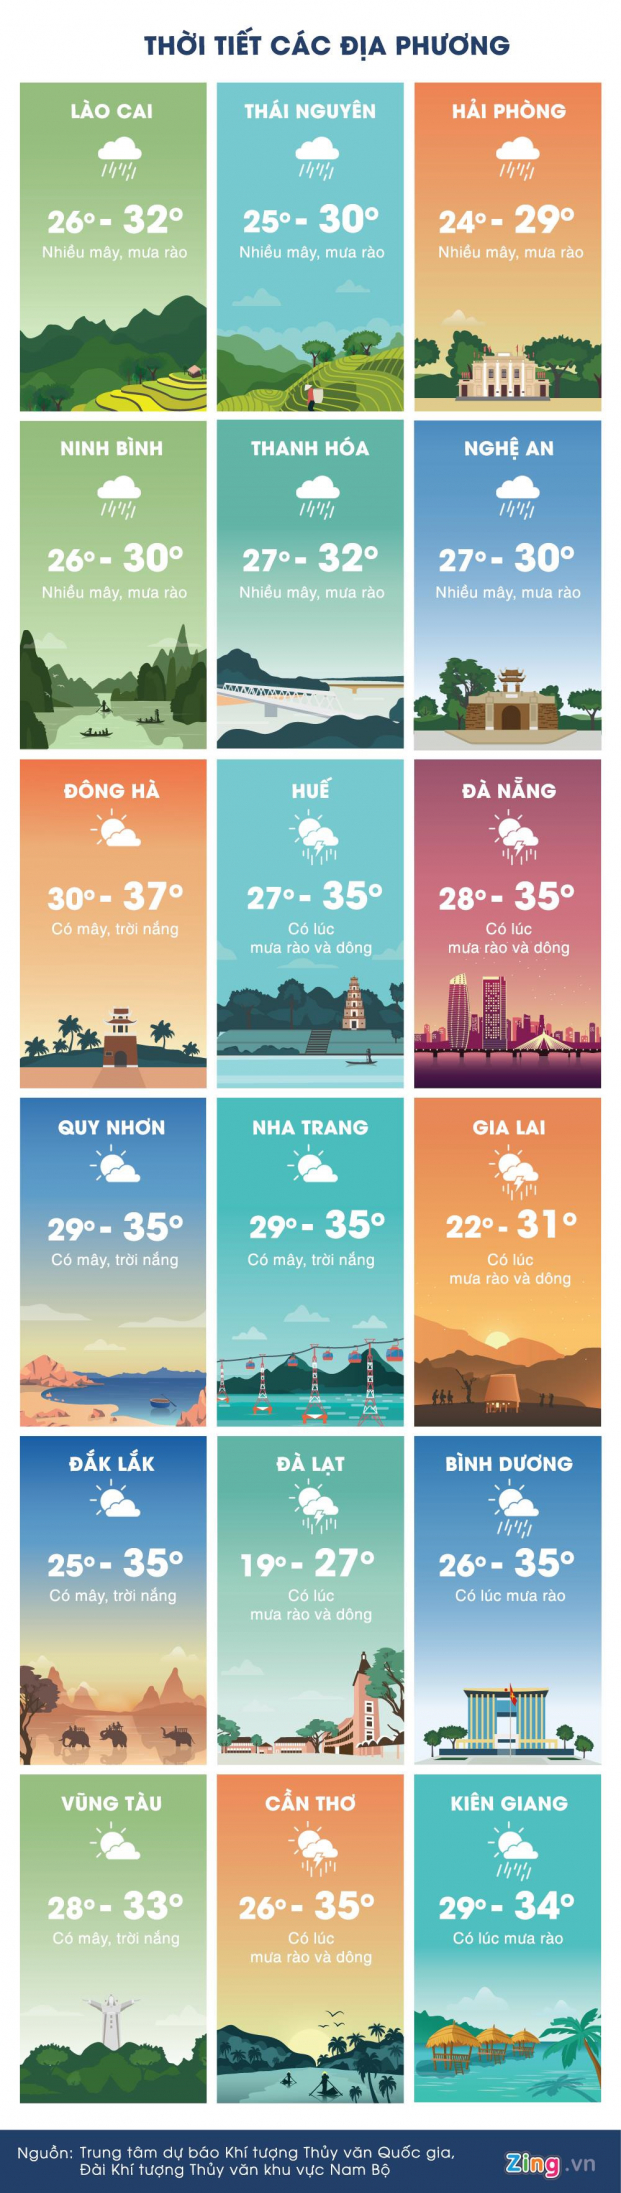 Dự báo thời tiết 21/5/2019: Hà Nội giảm nhiệt, mưa và dông trên diện rộng 2